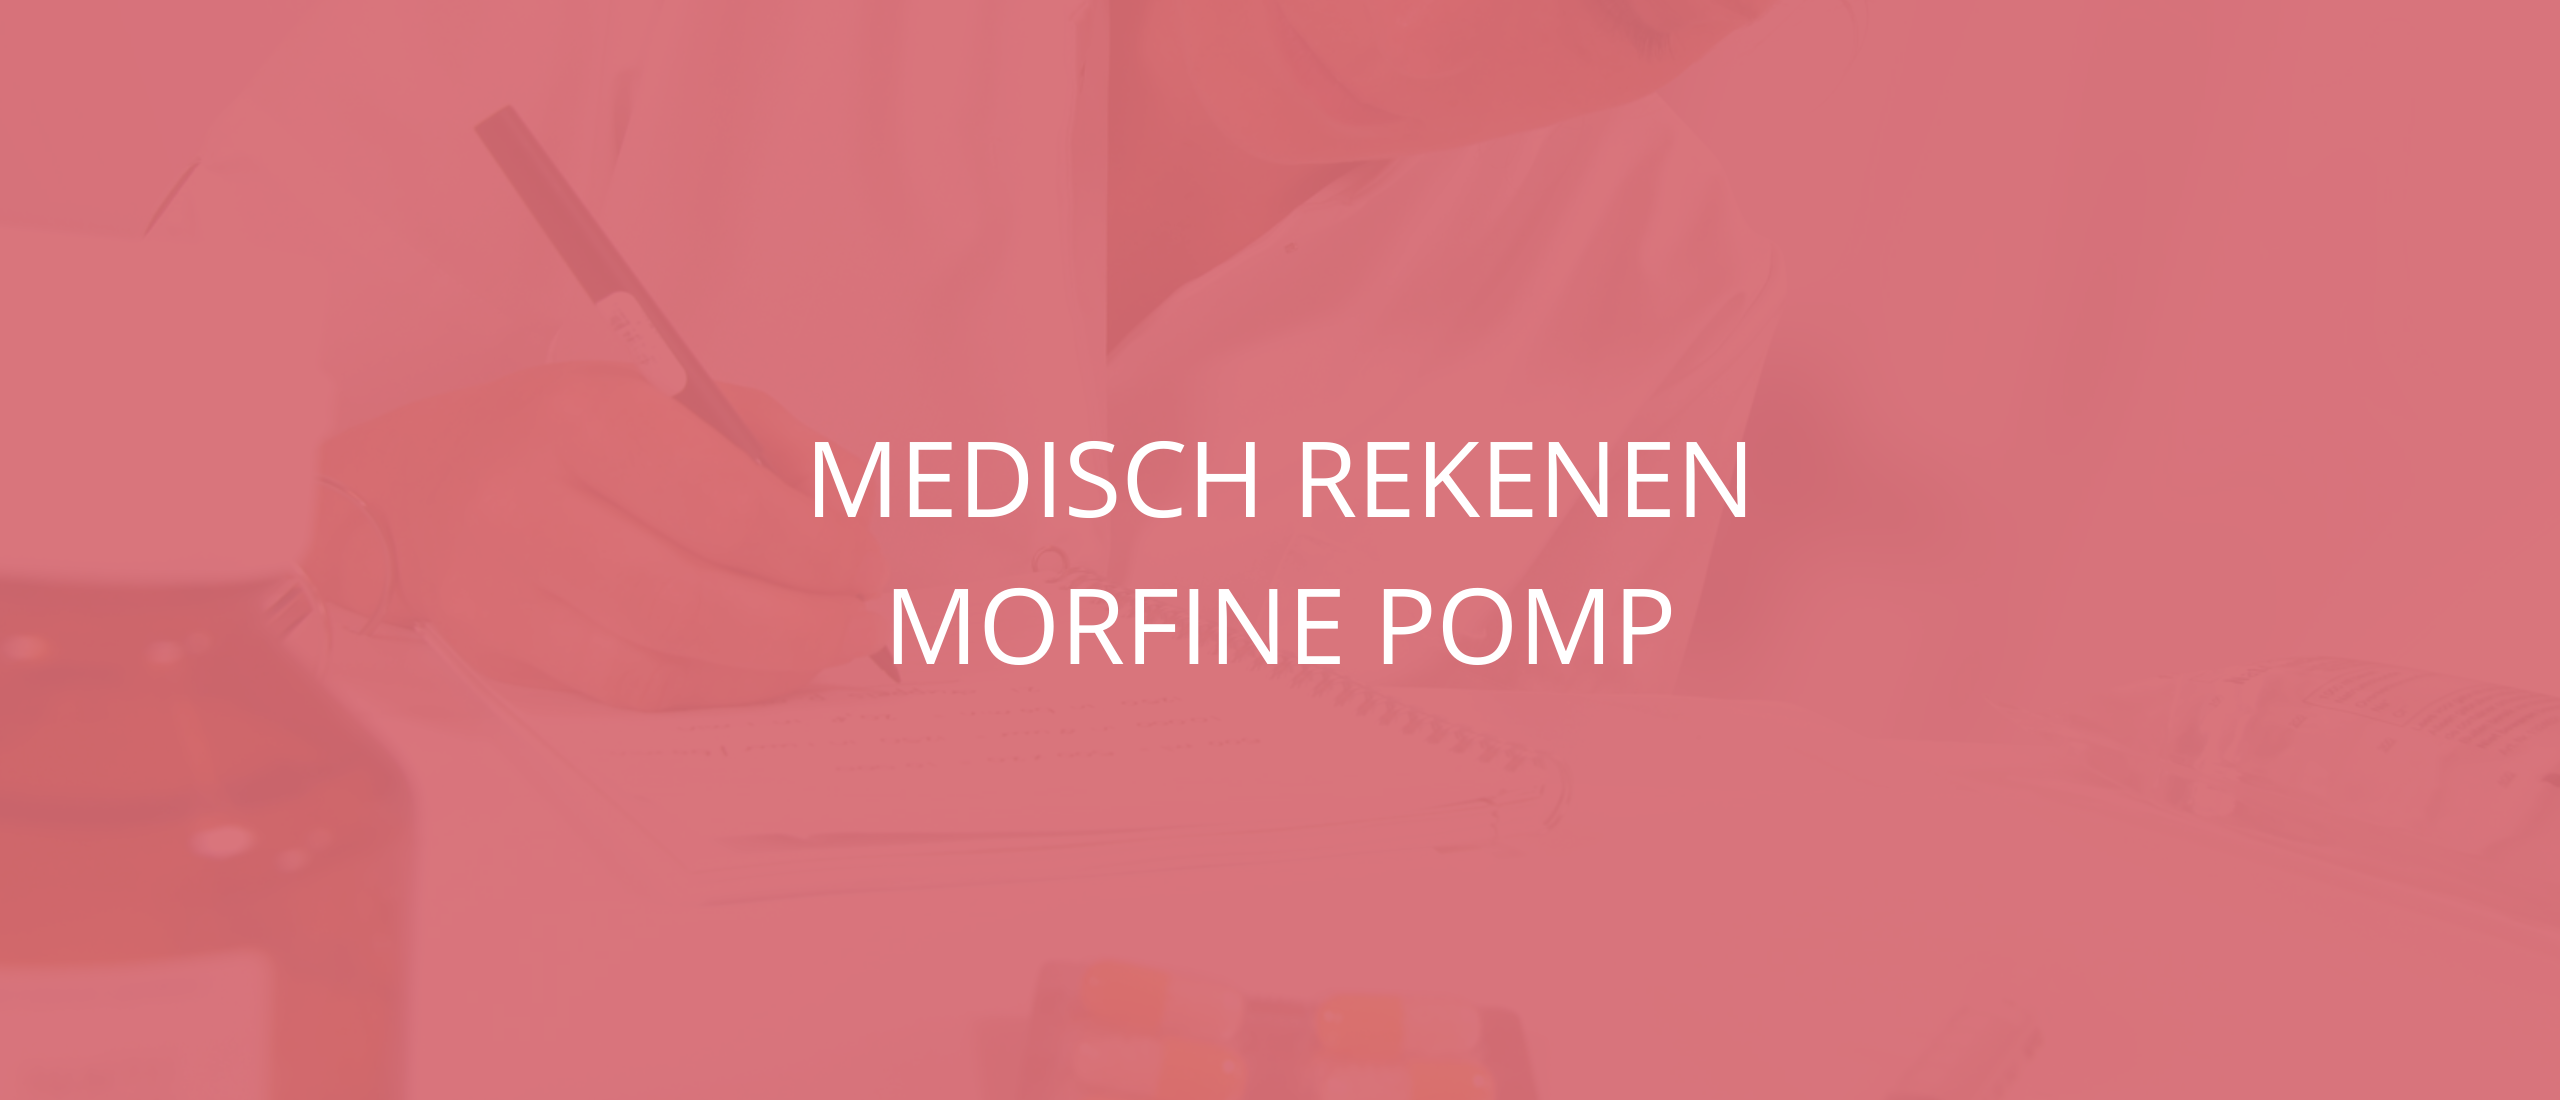 medisch rekenen | morfine pomp